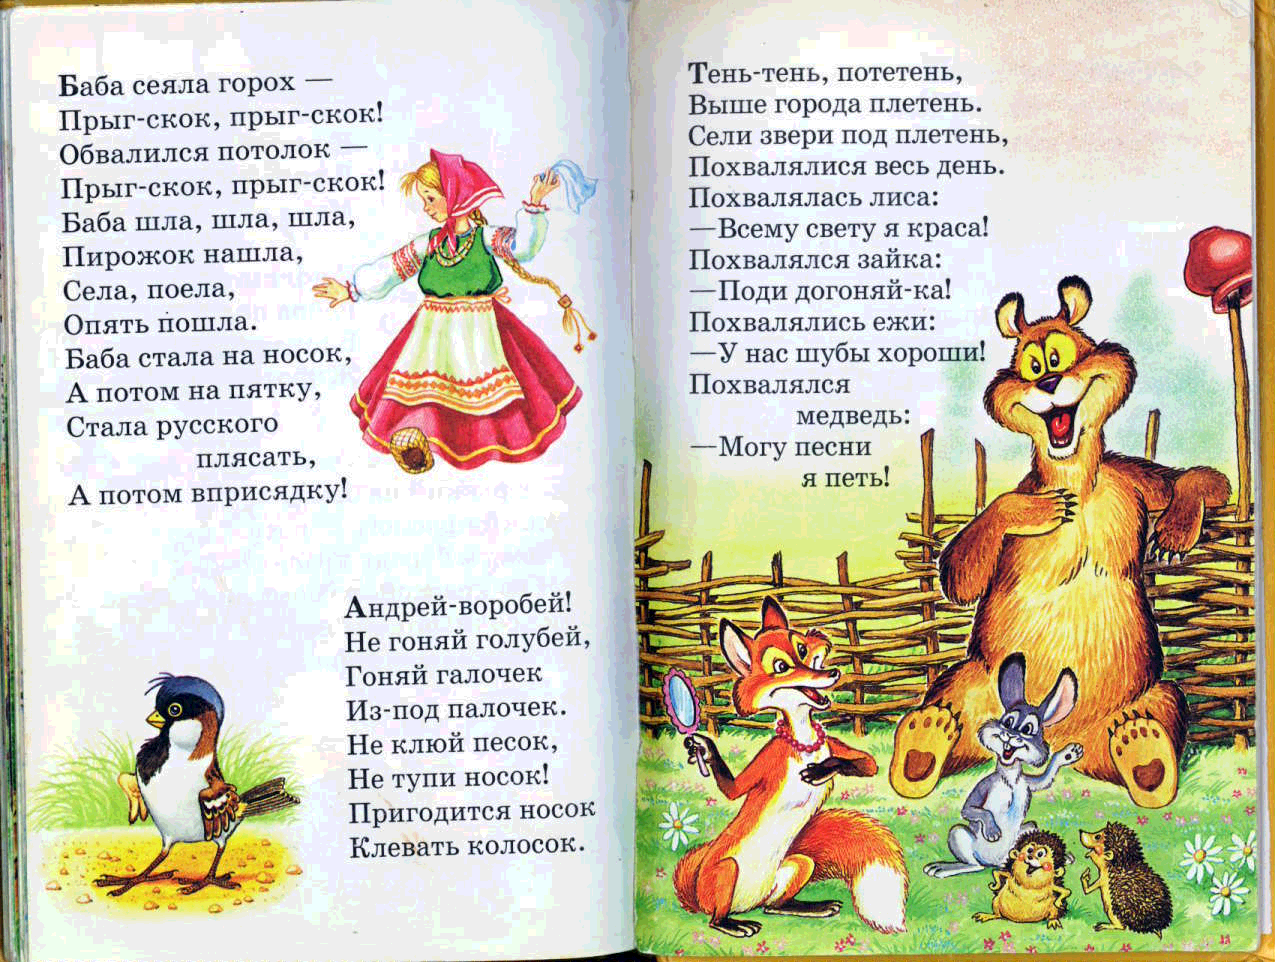 Русские народные песни